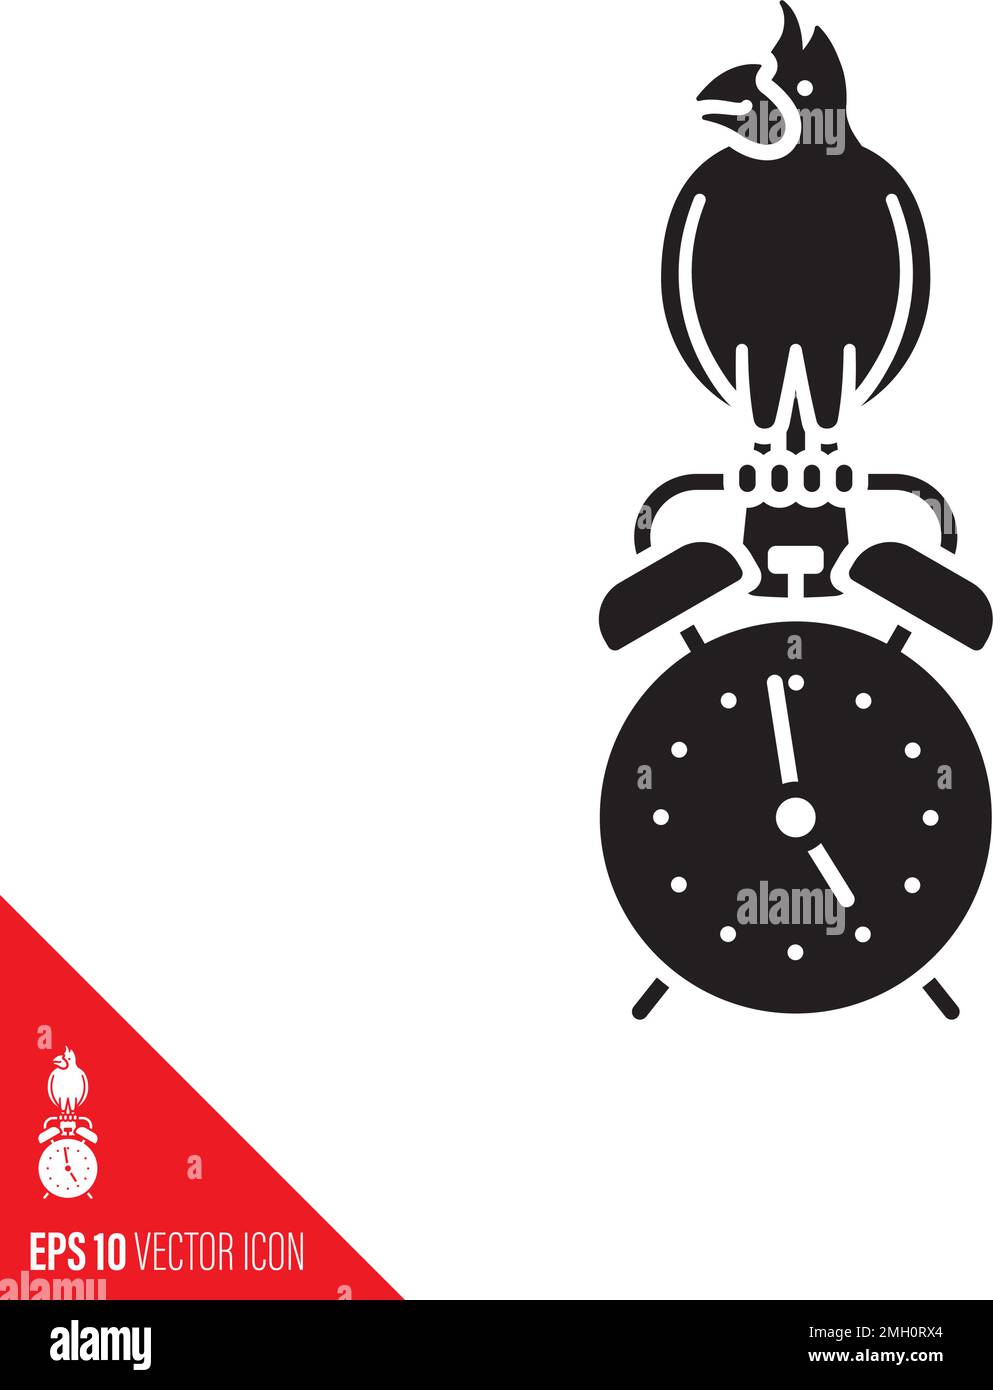 Cardinal bird on classic alarm clock vector glyph icon. Early Bird concept. Stock Vector